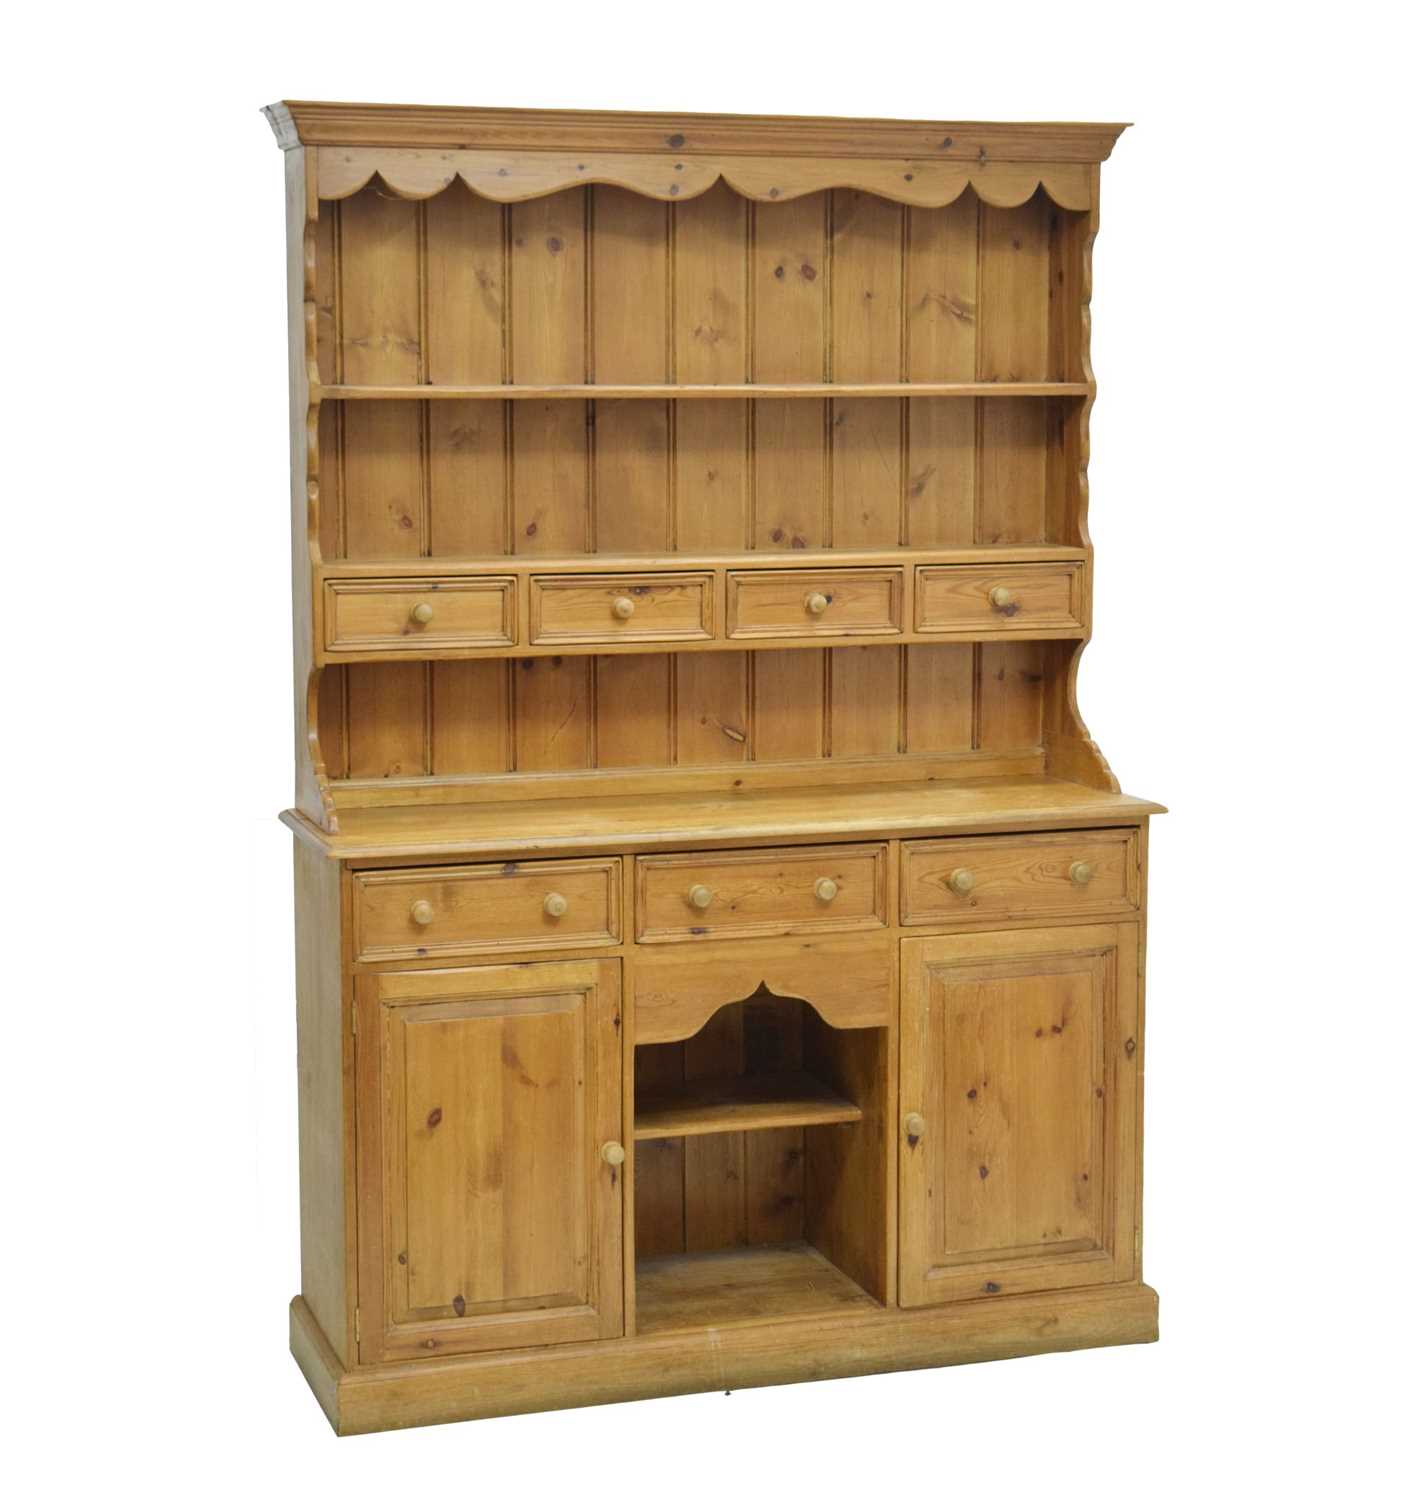 Pine 'dog-kennel' dresser and rack